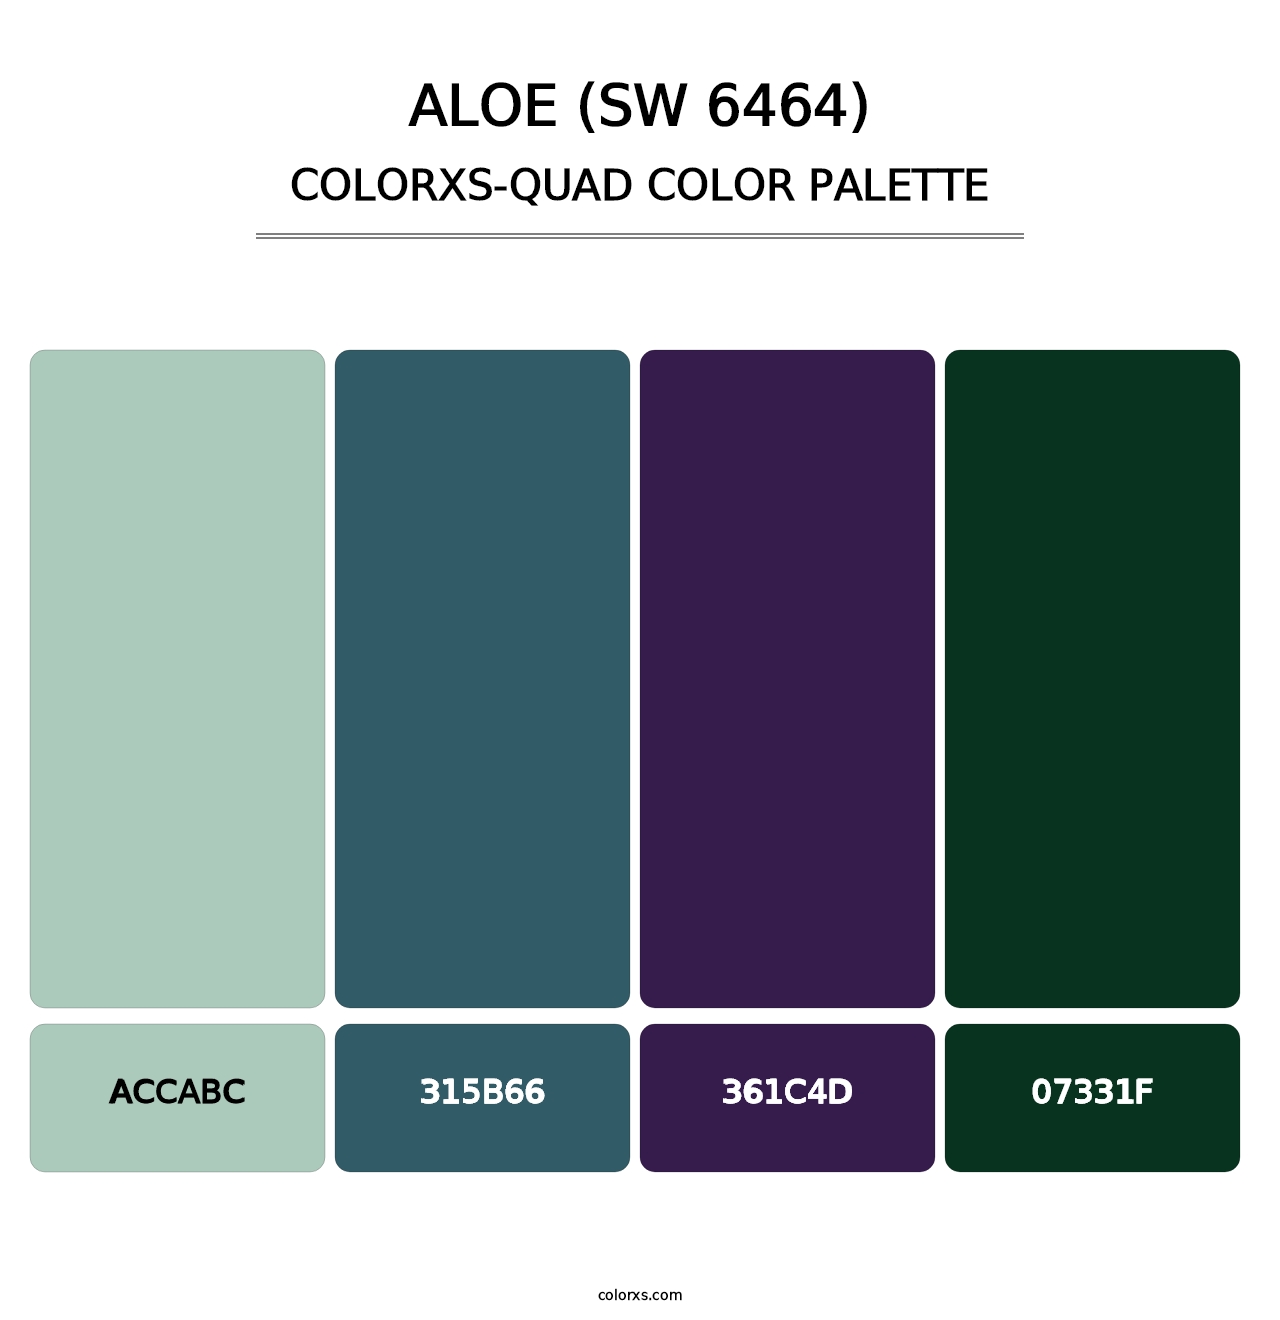 Aloe (SW 6464) - Colorxs Quad Palette